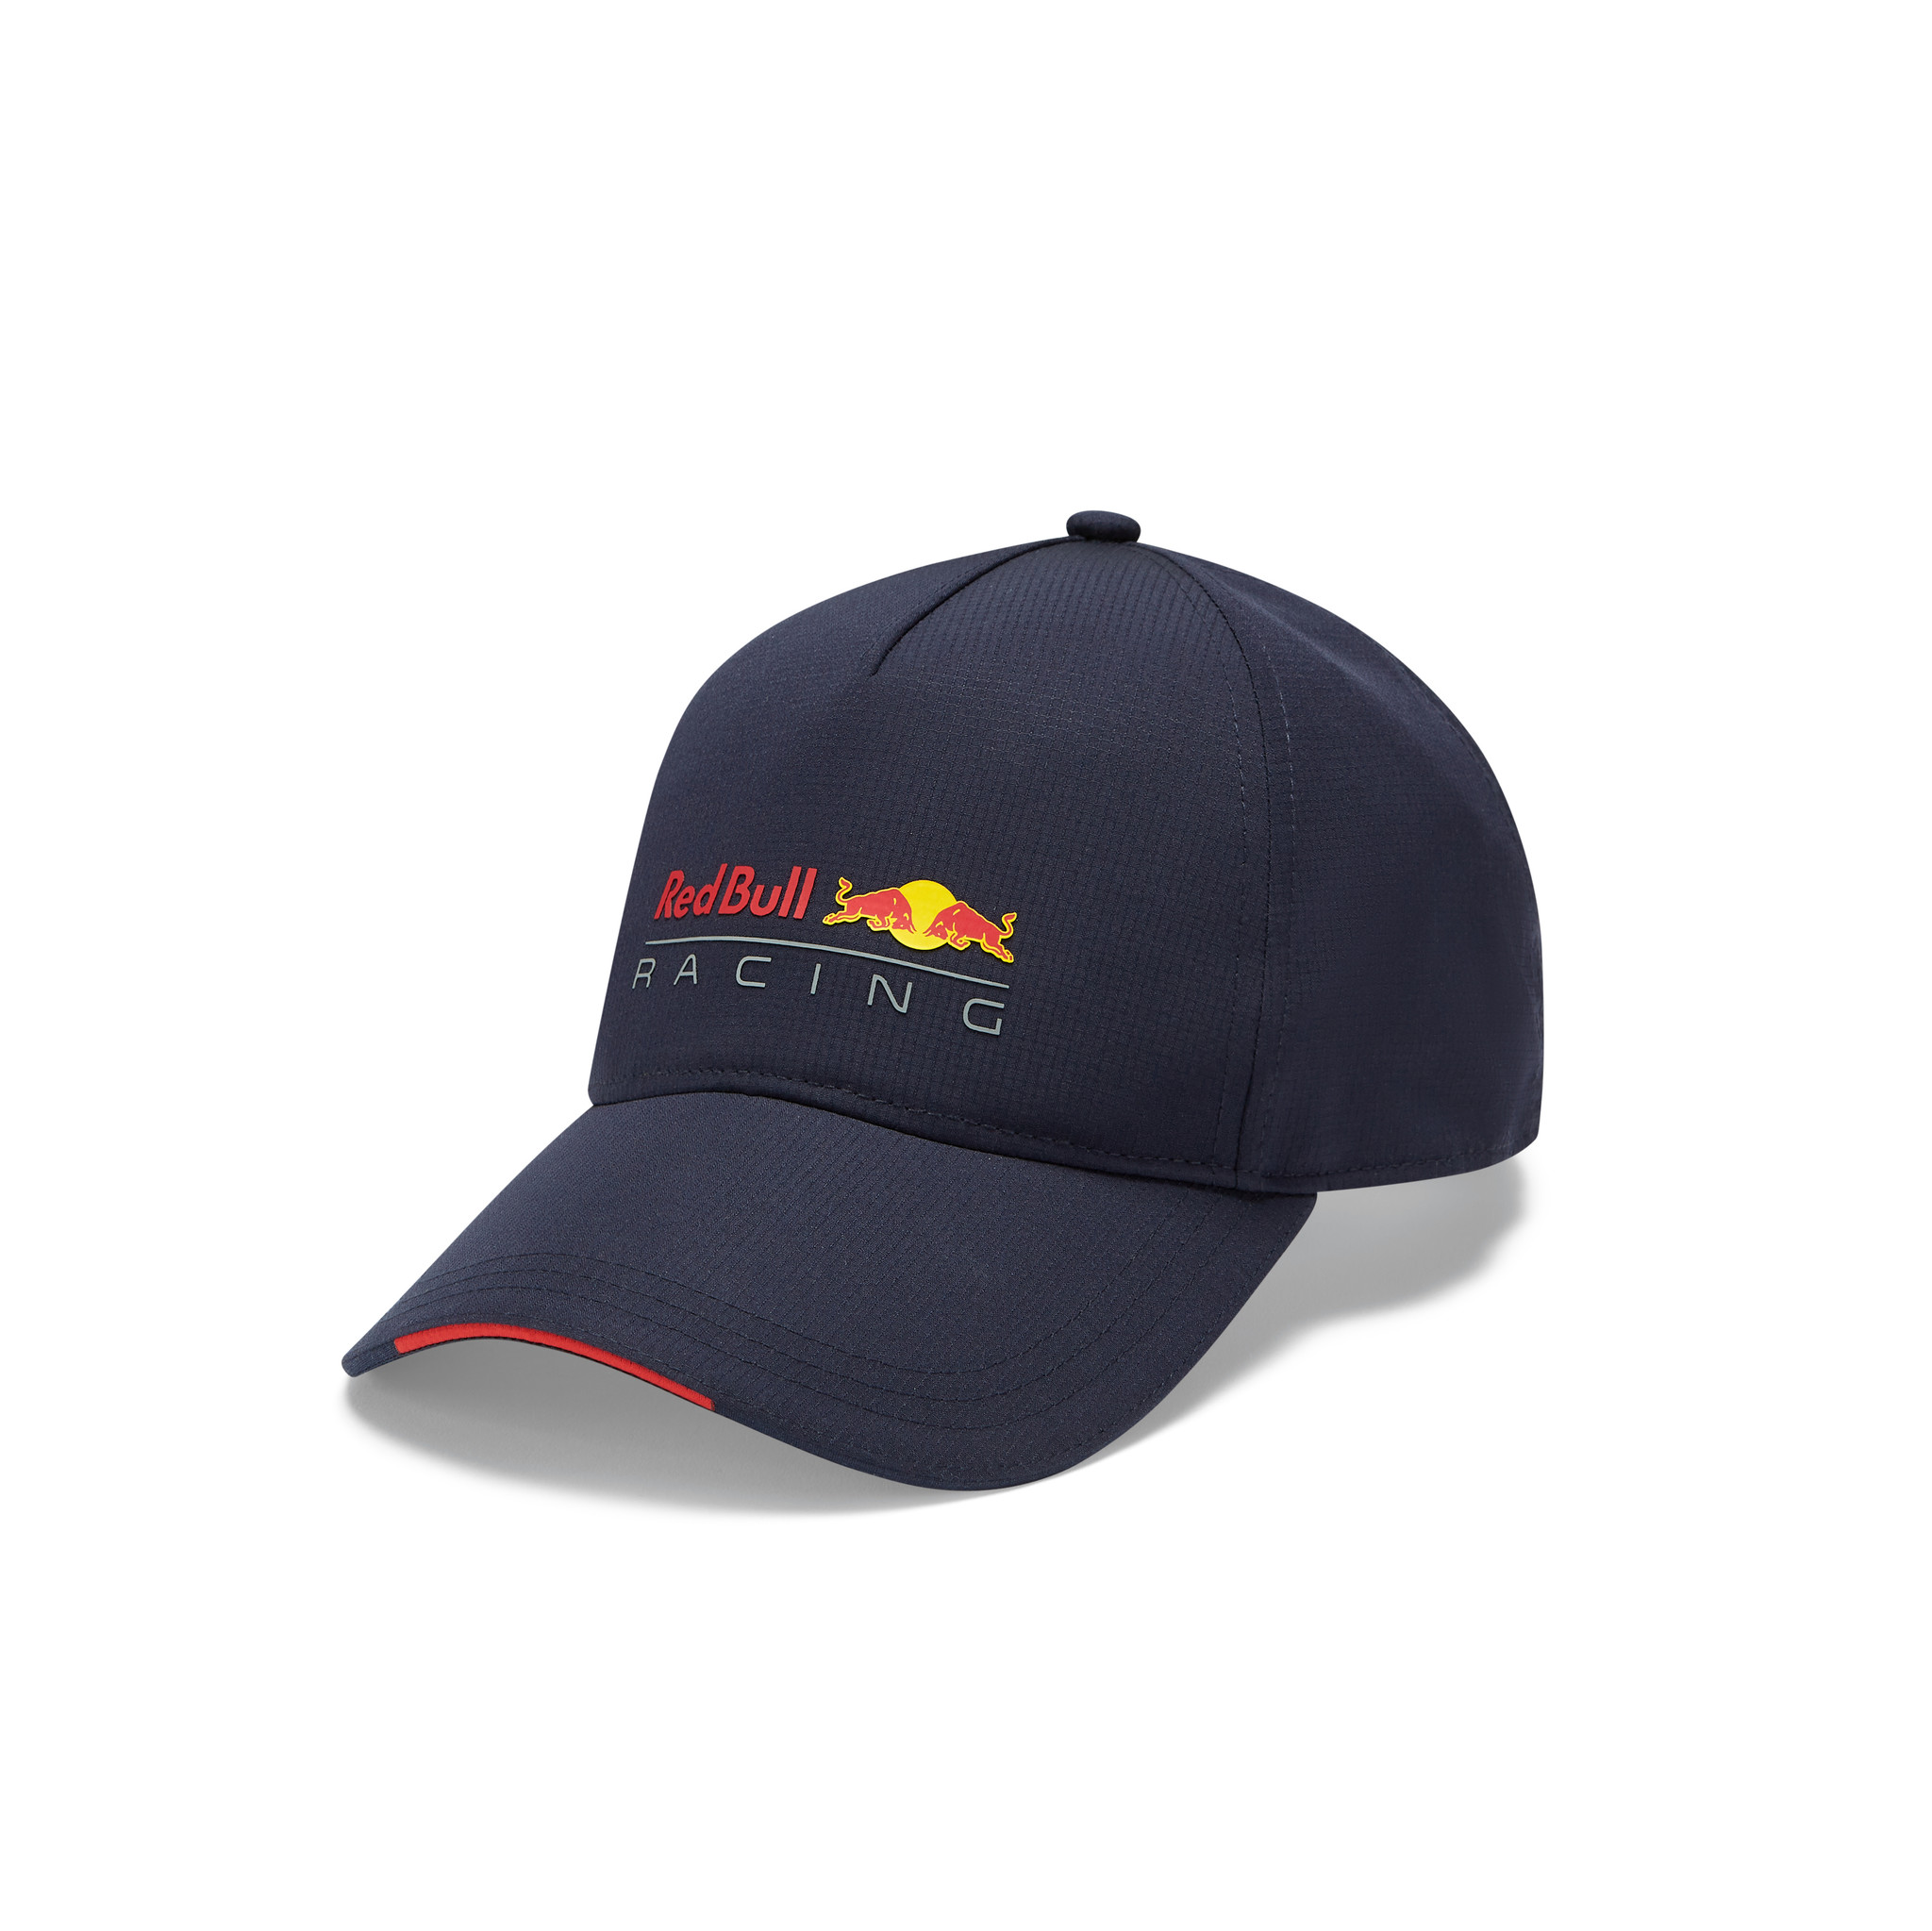 Red Bull Racing Classic Cap 2021 - The Racing Store